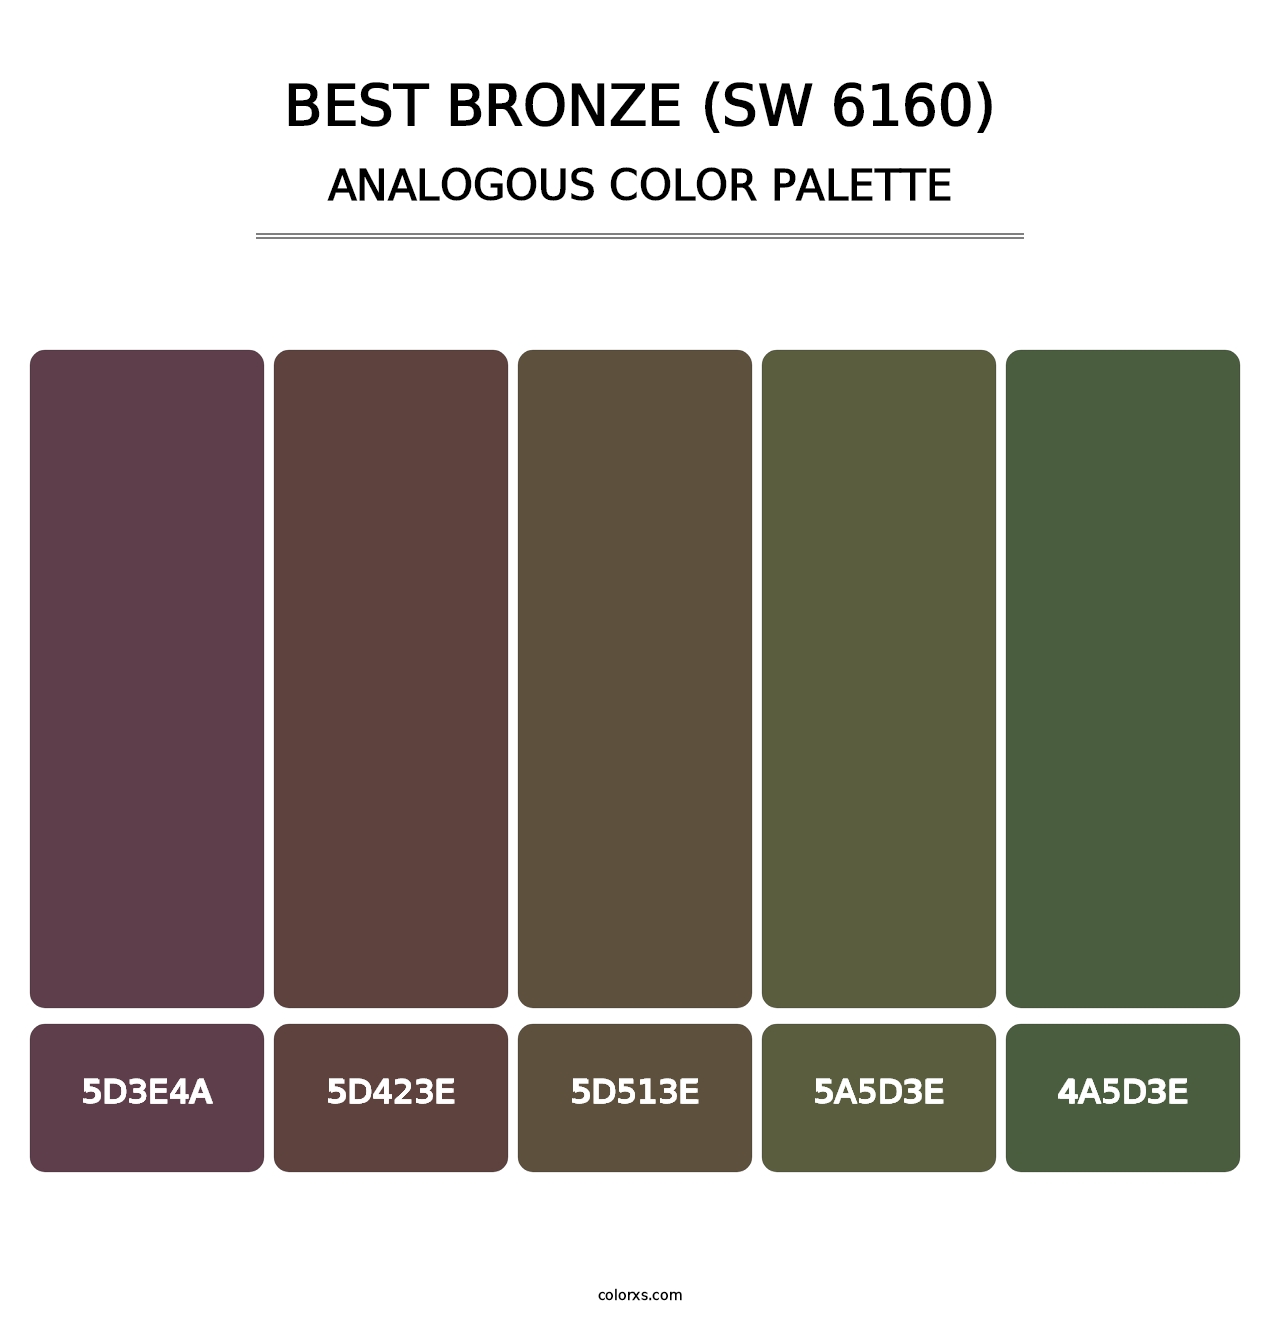 Best Bronze (SW 6160) - Analogous Color Palette